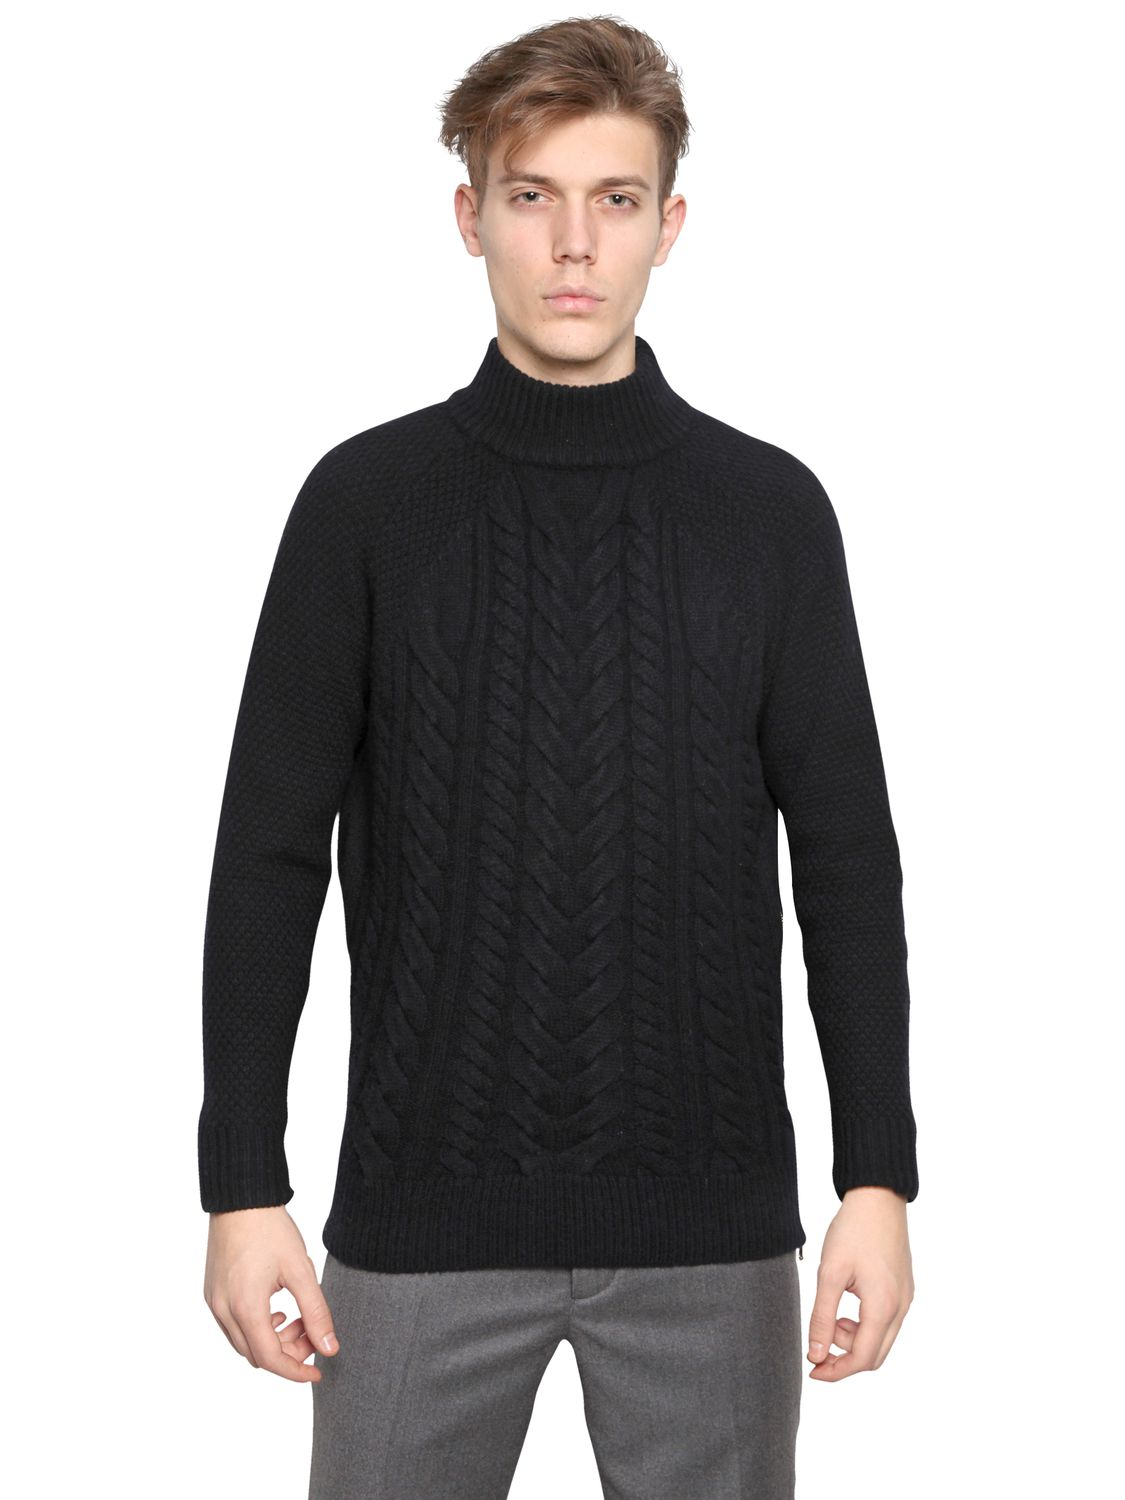 Lyst - Carven Side Zip Twisted Wool Knit Sweater in Black for Men